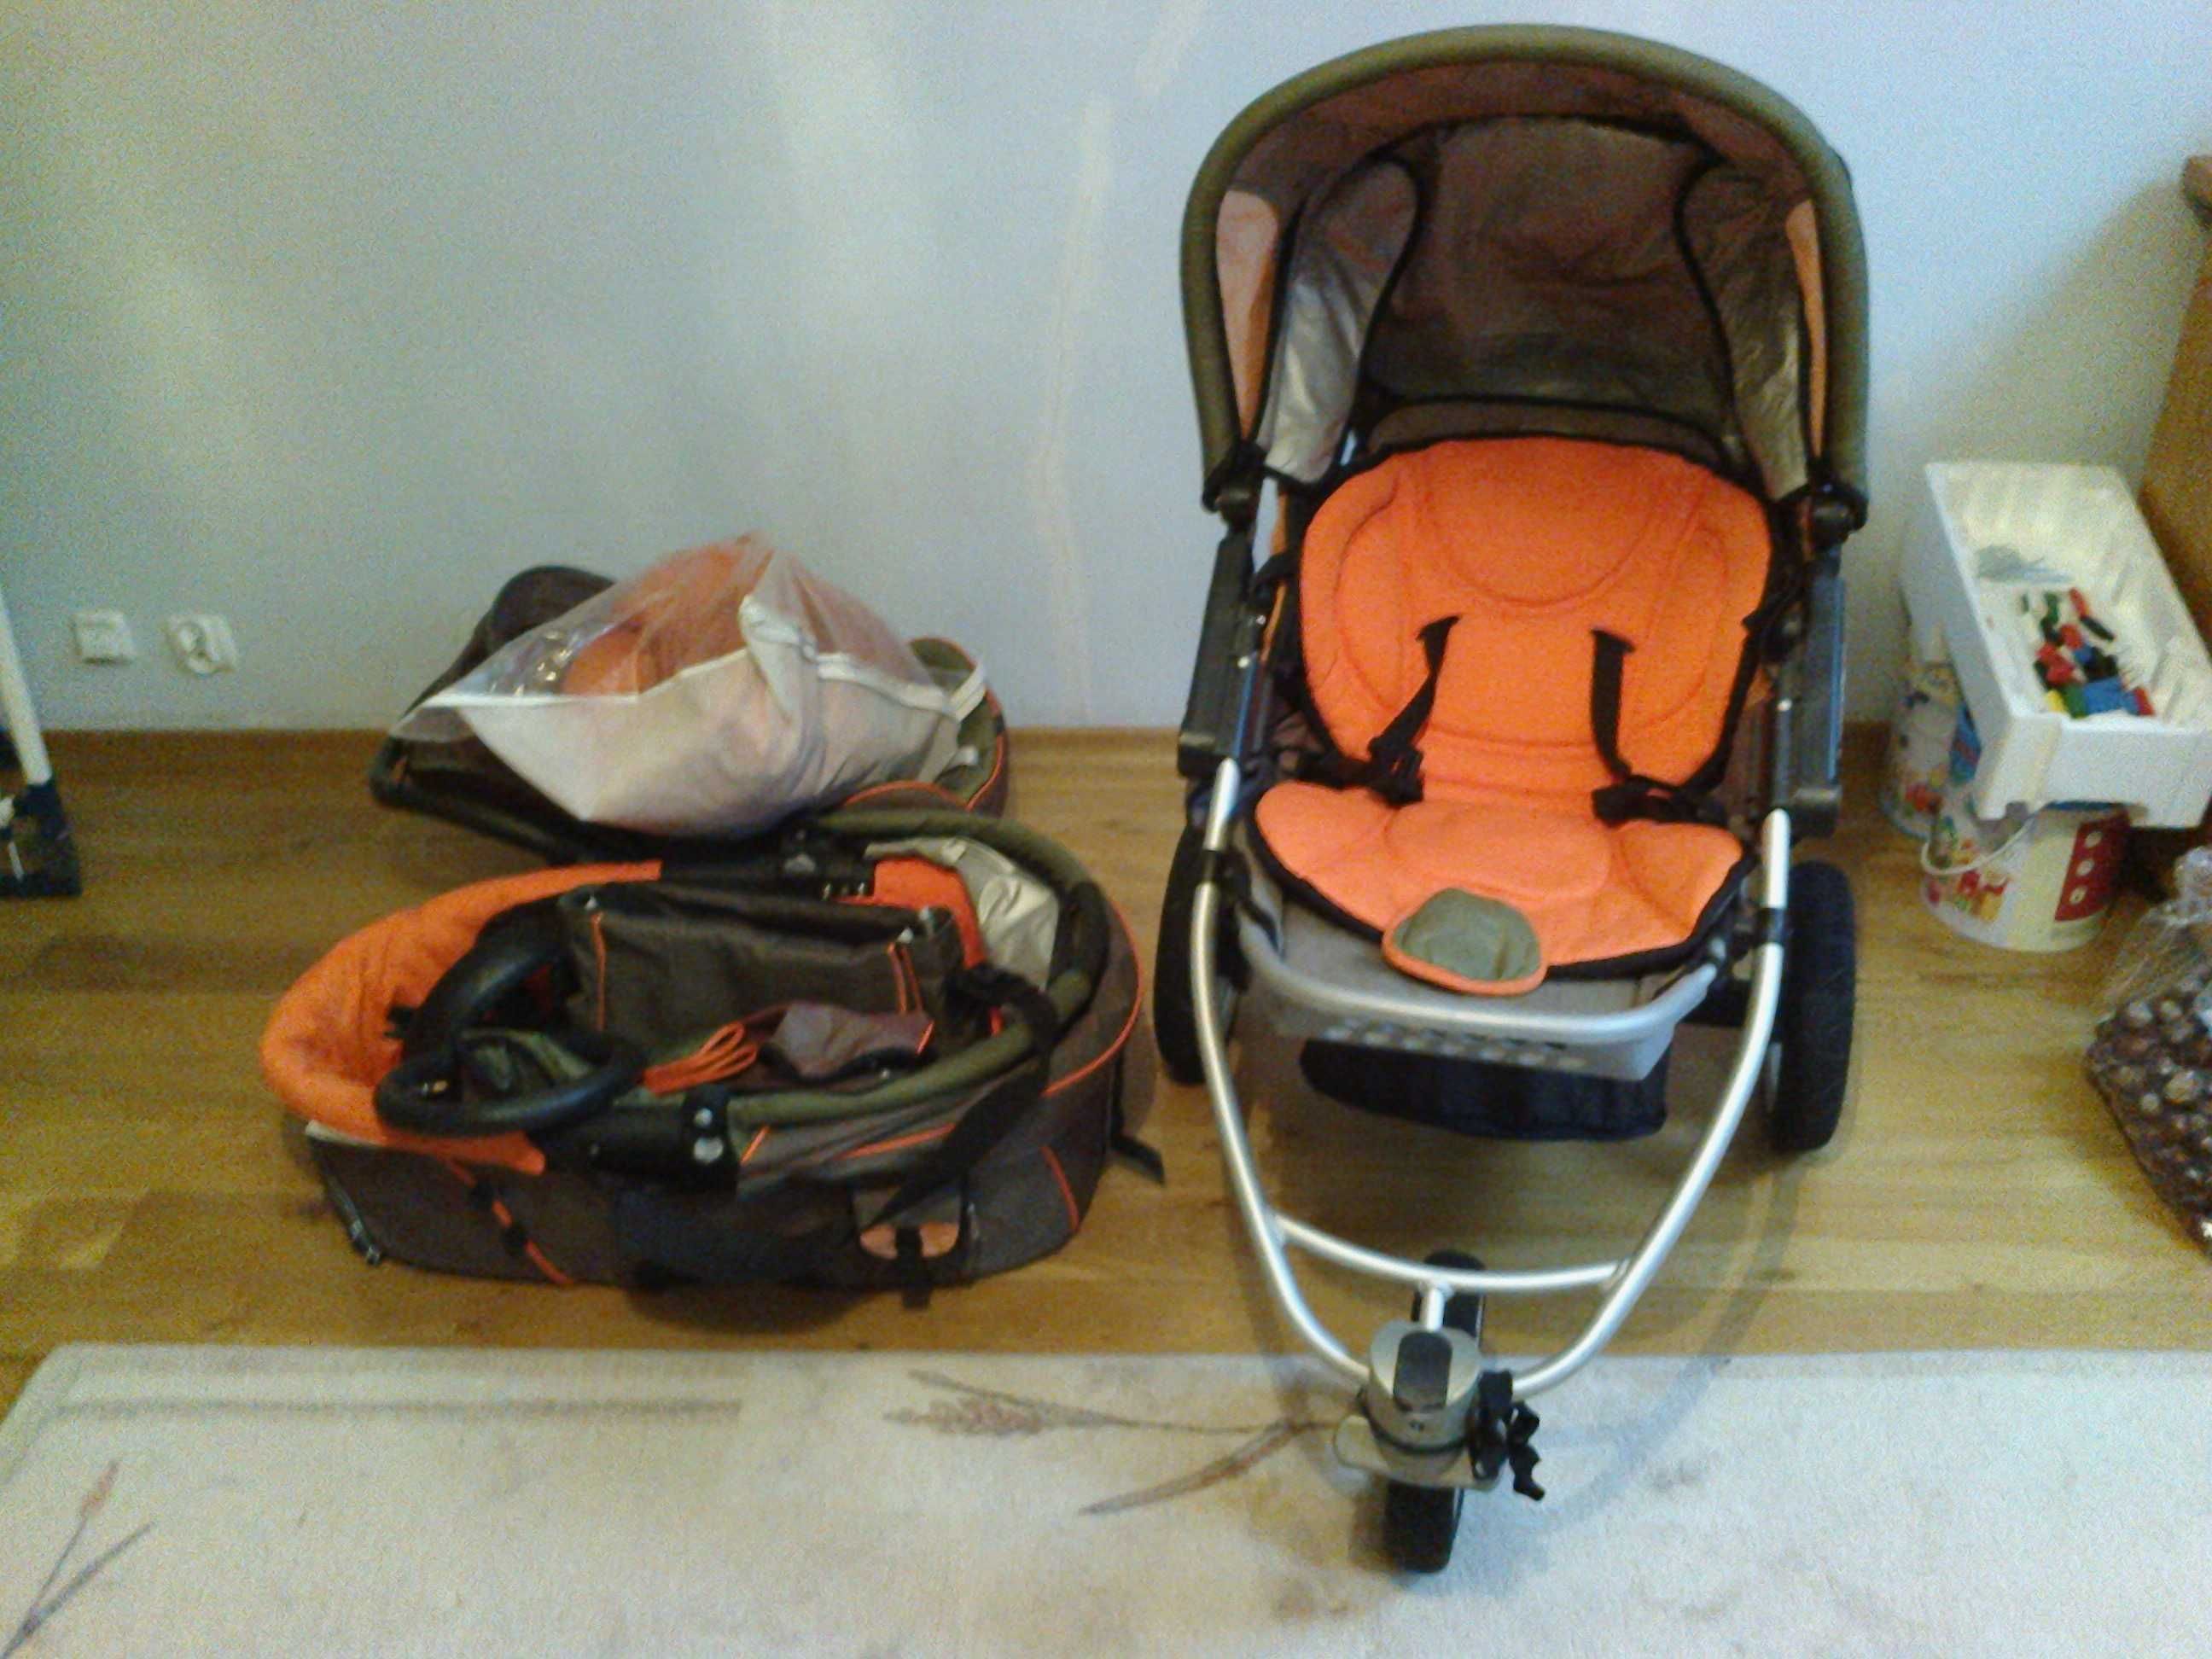 Wózek Quinny Speedi Sx z nosidełkiem, torbą i itd.